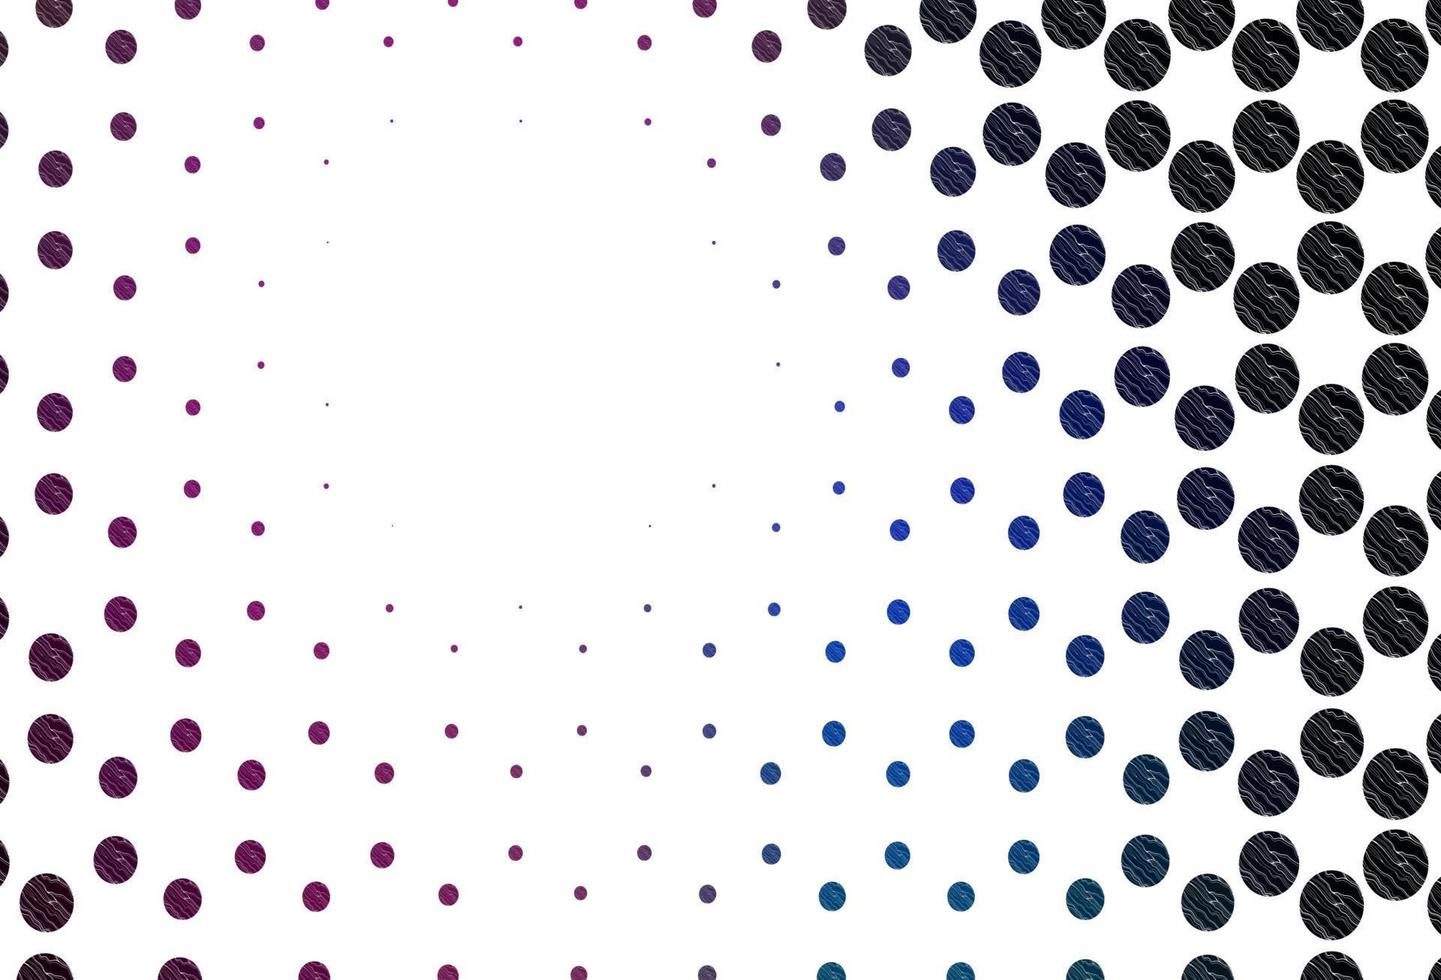 padrão de vetor rosa, azul claro com esferas.